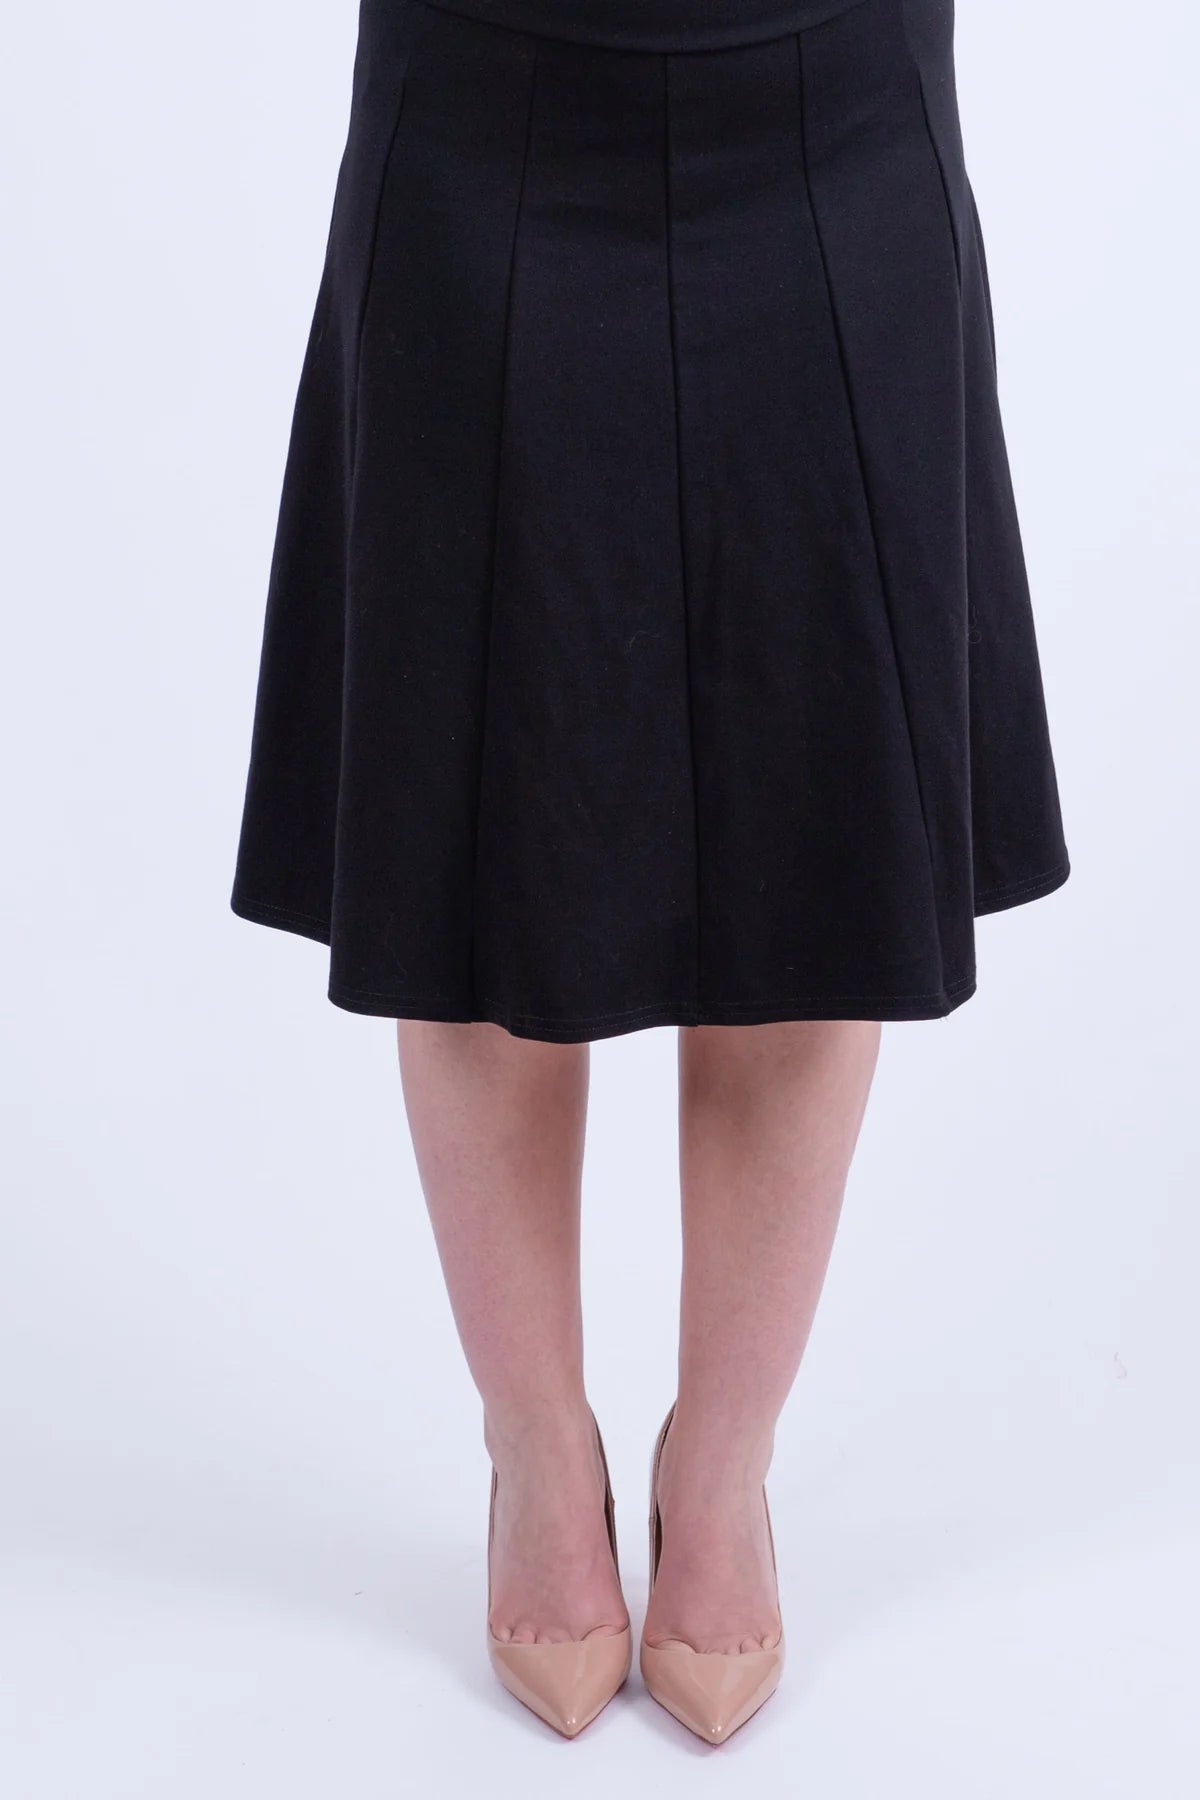 KMW Panel Skirt Black 27" 4827